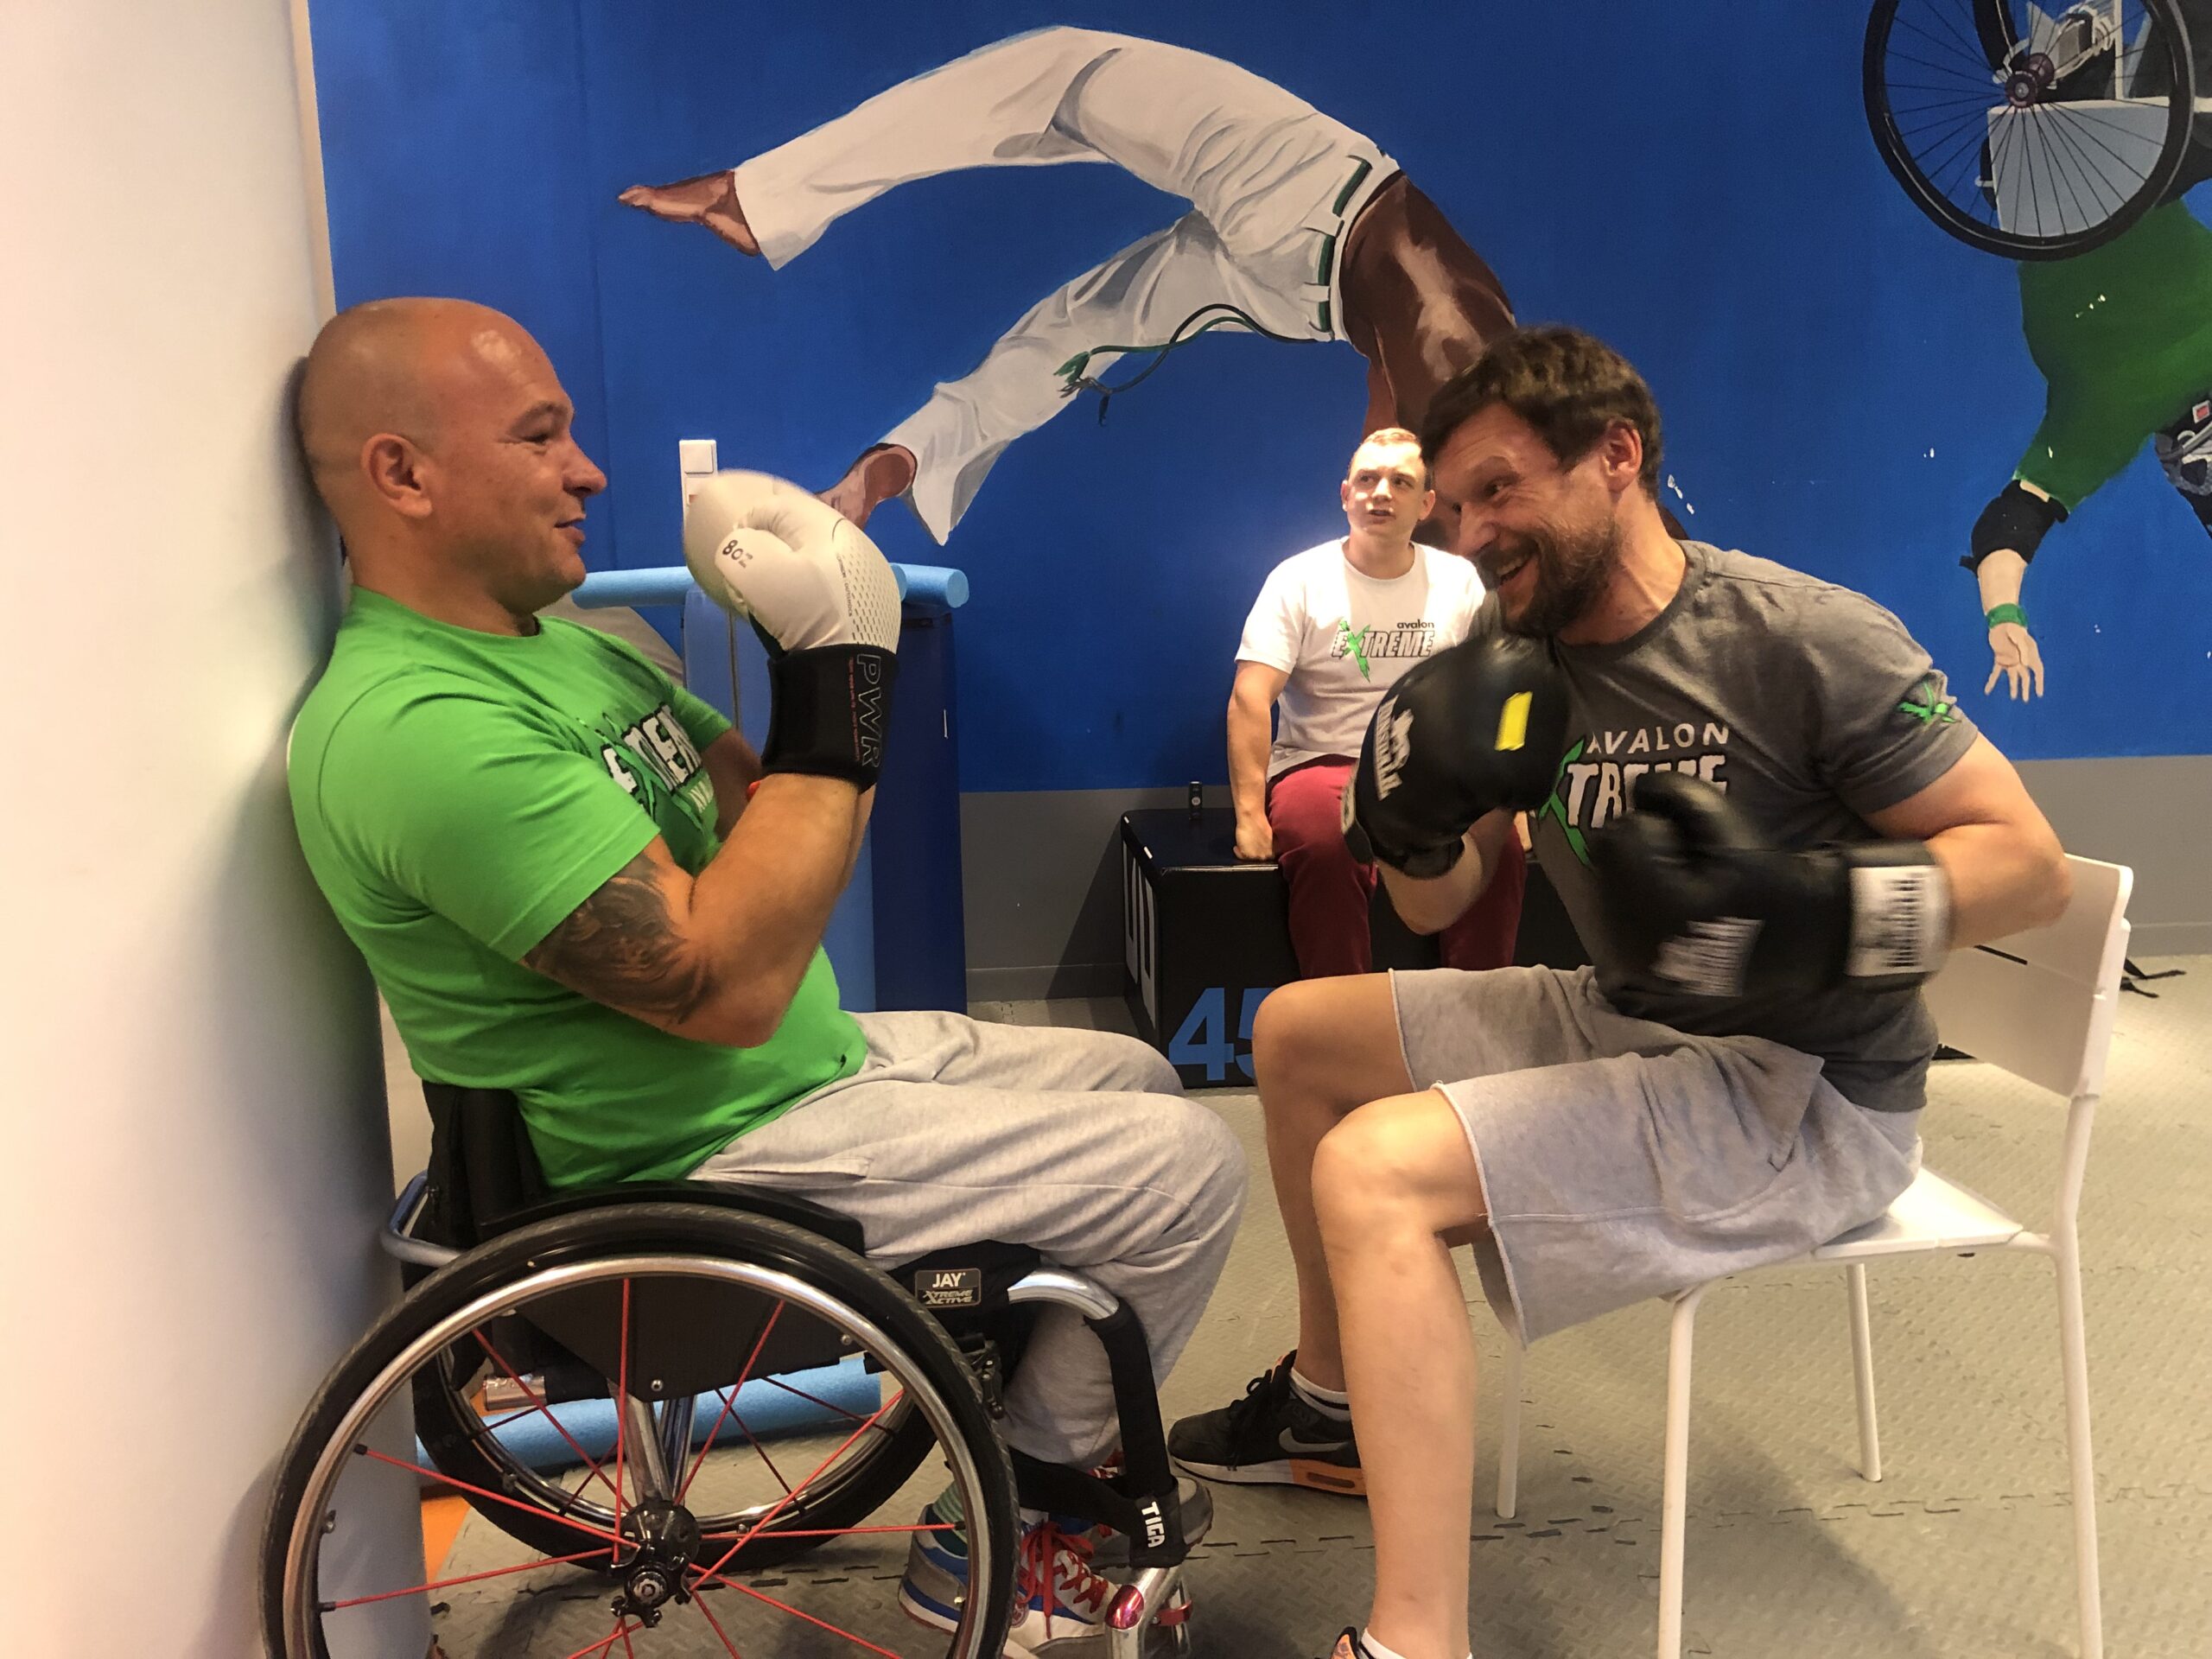 Na zdjęciu znajduje się dwóch mężczyzn w rękawicach bokserskich. Jeden z nich (Arek Pilch) jest na wózku, drugi siedzi na przeciwko na krześle. Trenują boks.